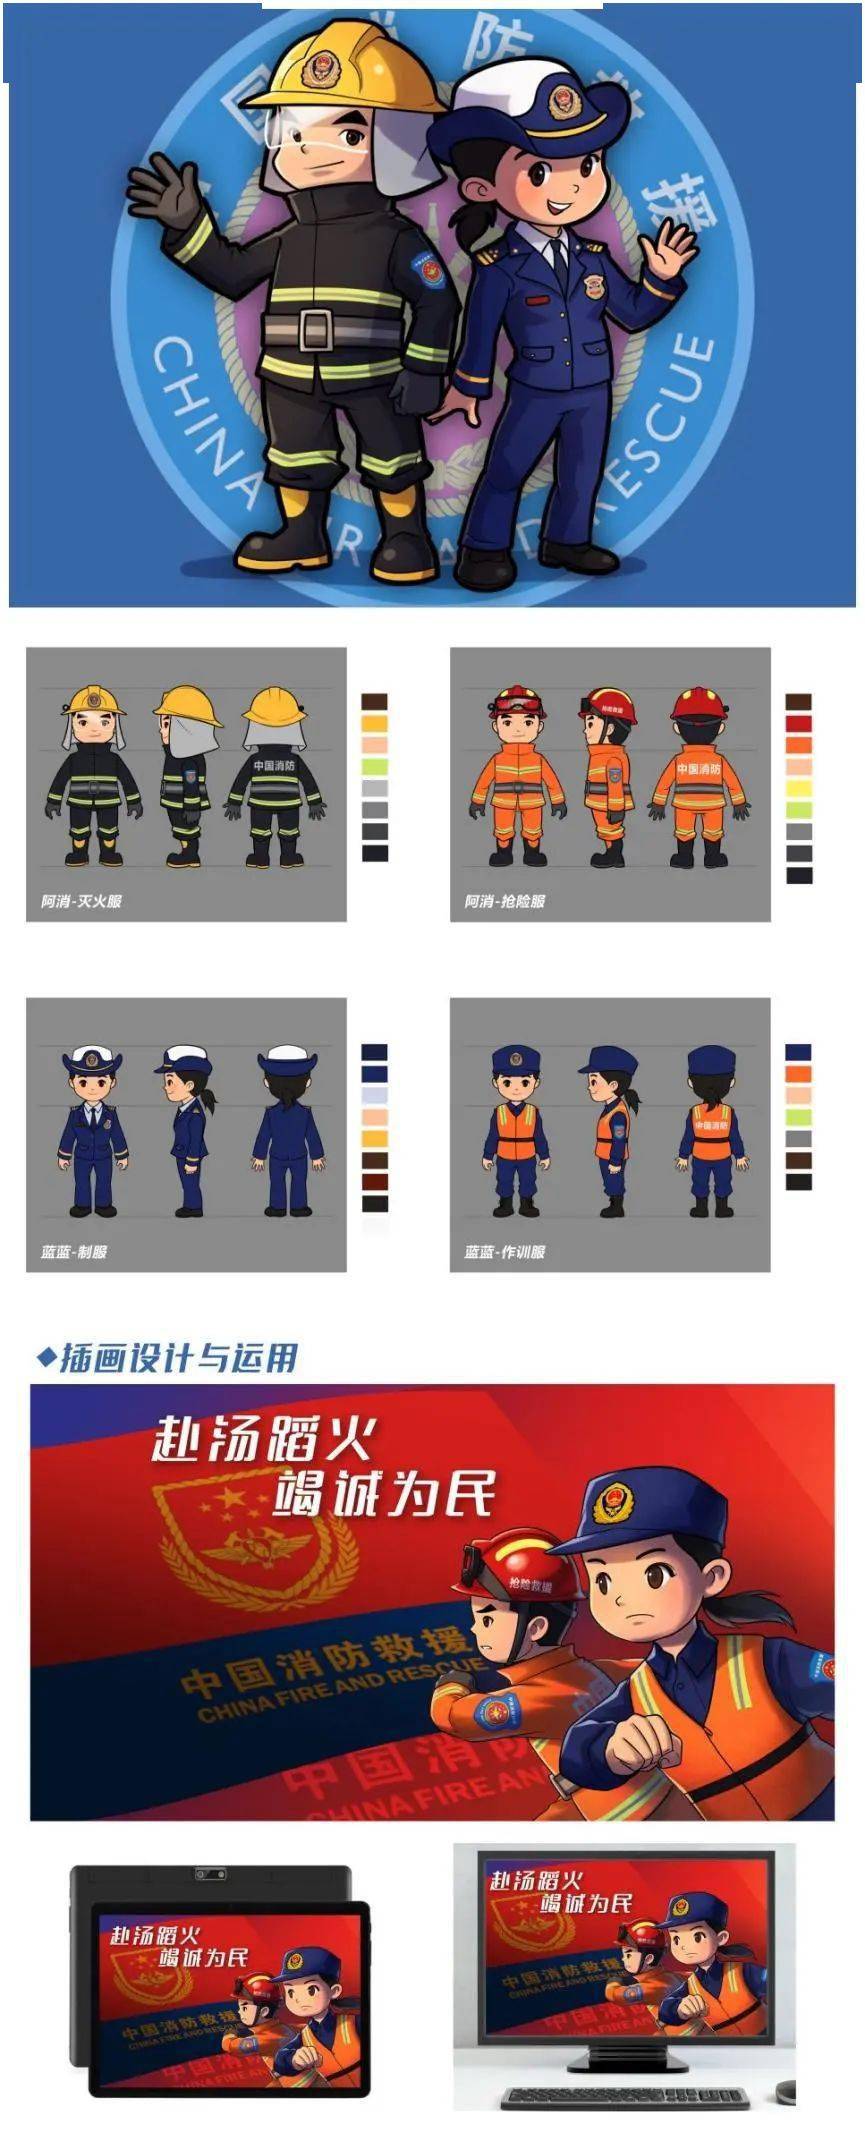 揭晓| 中国消防动漫形象创意设计大赛结果公示